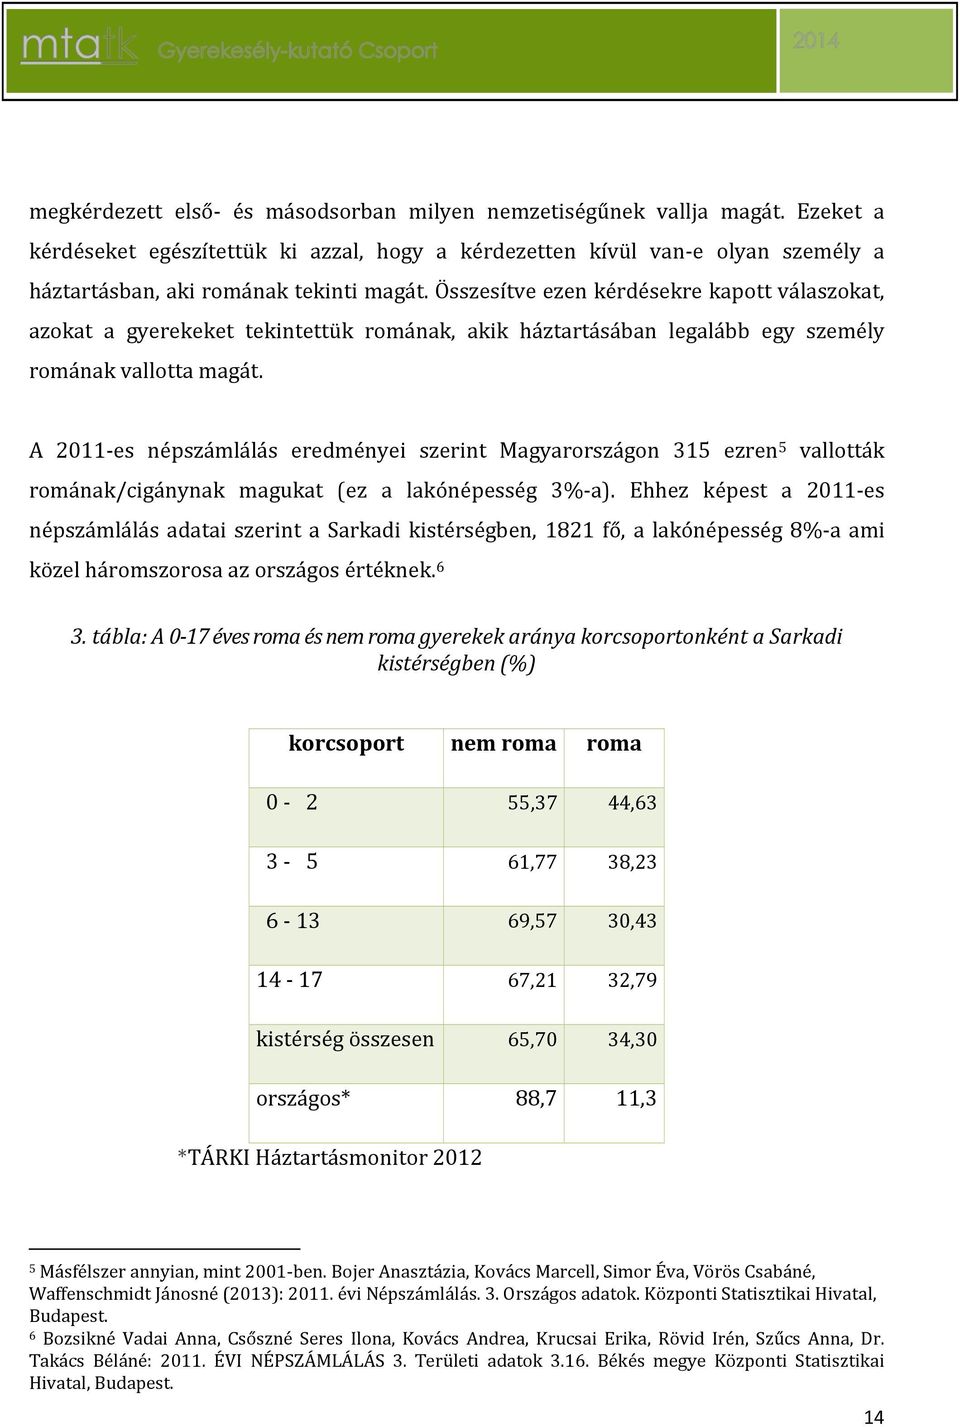 A 2011-es népszámlálás eredményei szerint Magyarországon 315 ezren 5 vallották romának/cigánynak magukat (ez a lakónépesség 3%-a).